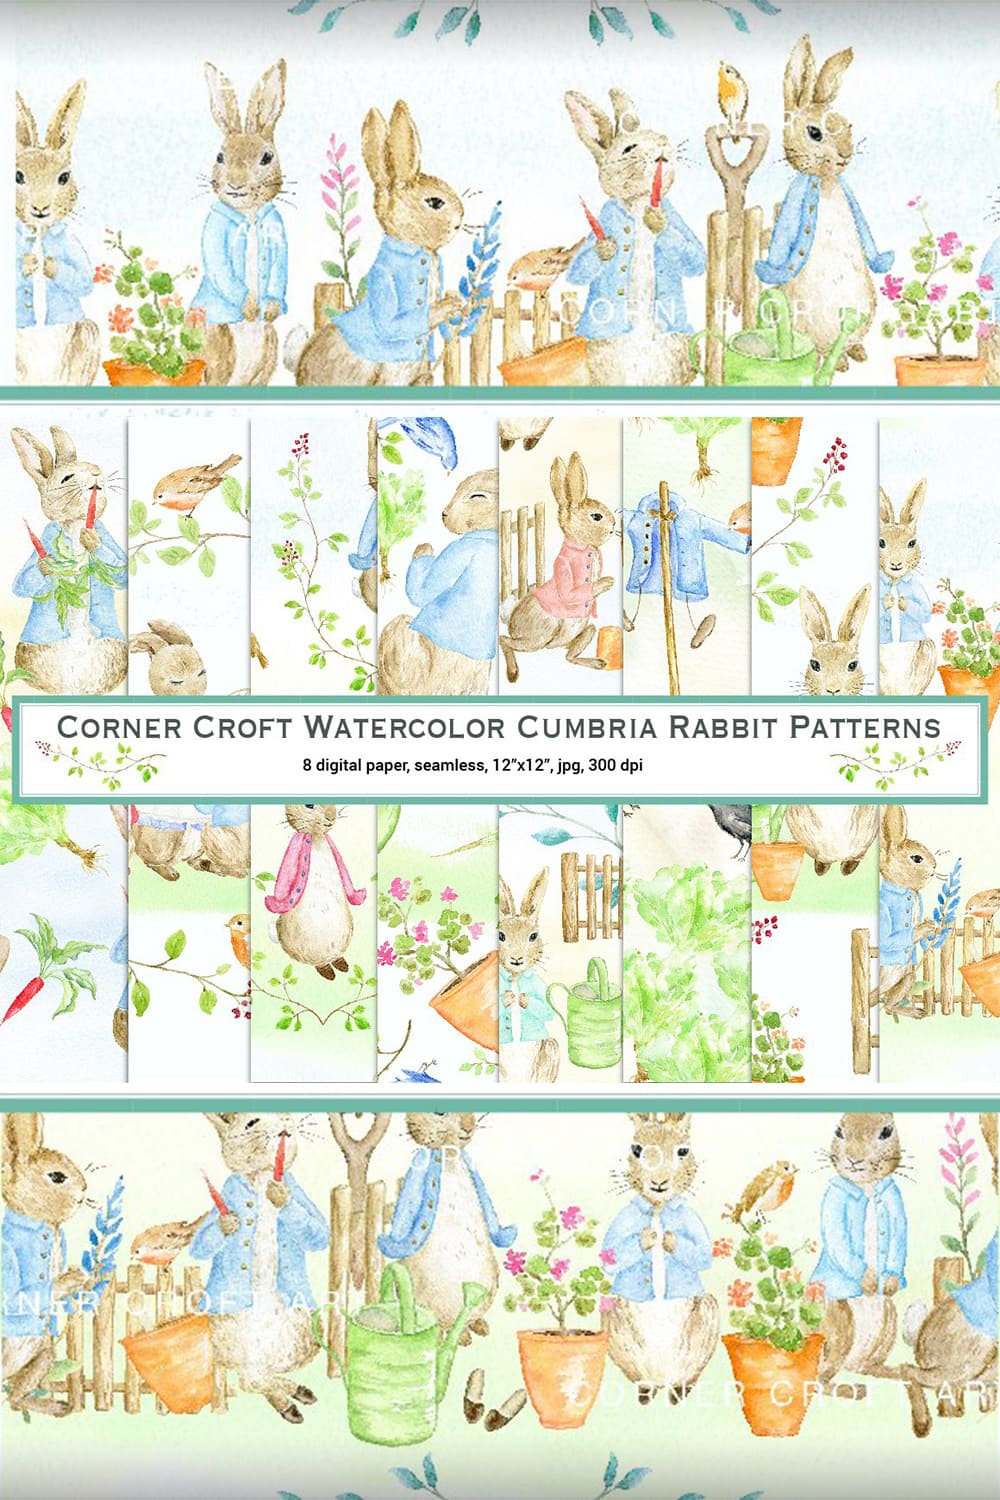 Watercolor Cumbria Rabbit Patterns.